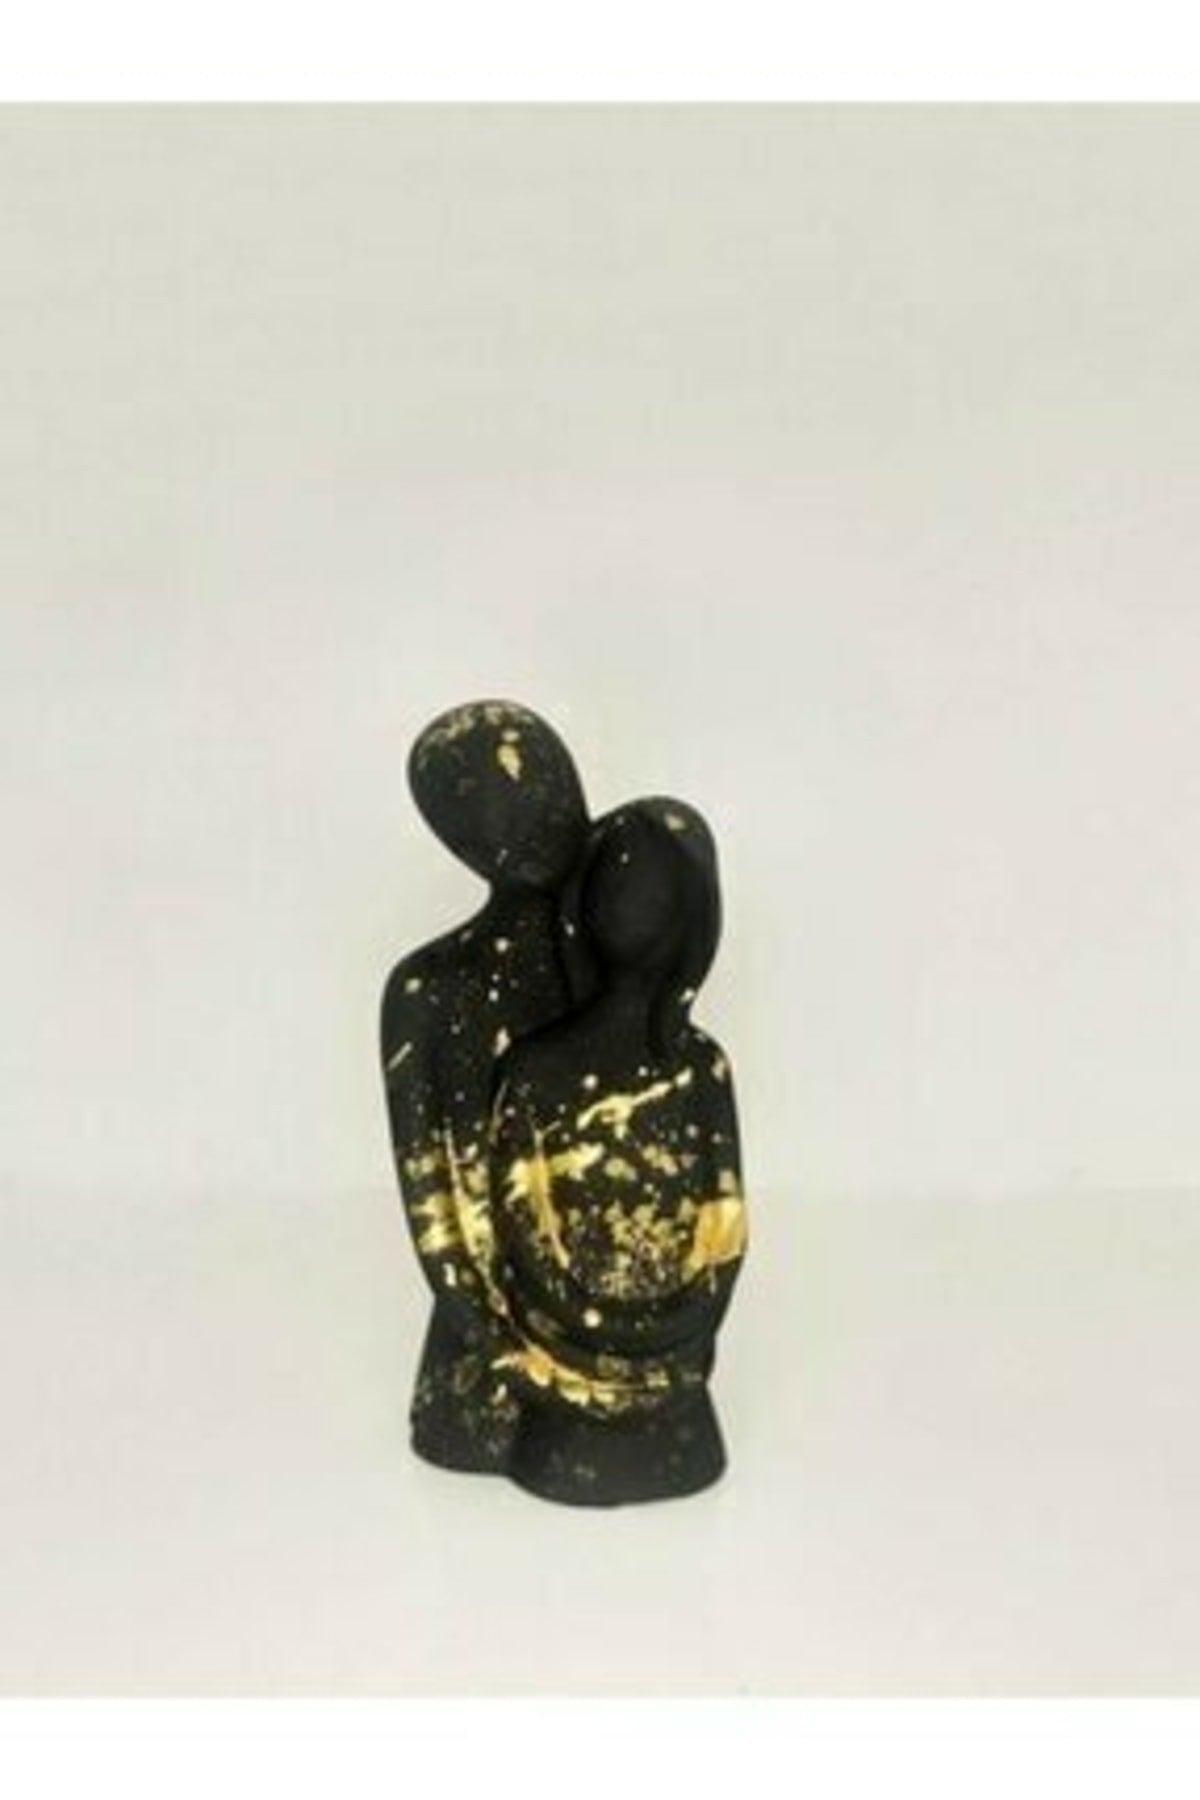 Hugging Couple Black Gold Detail Sculpture / Bust / Trinket - Swordslife